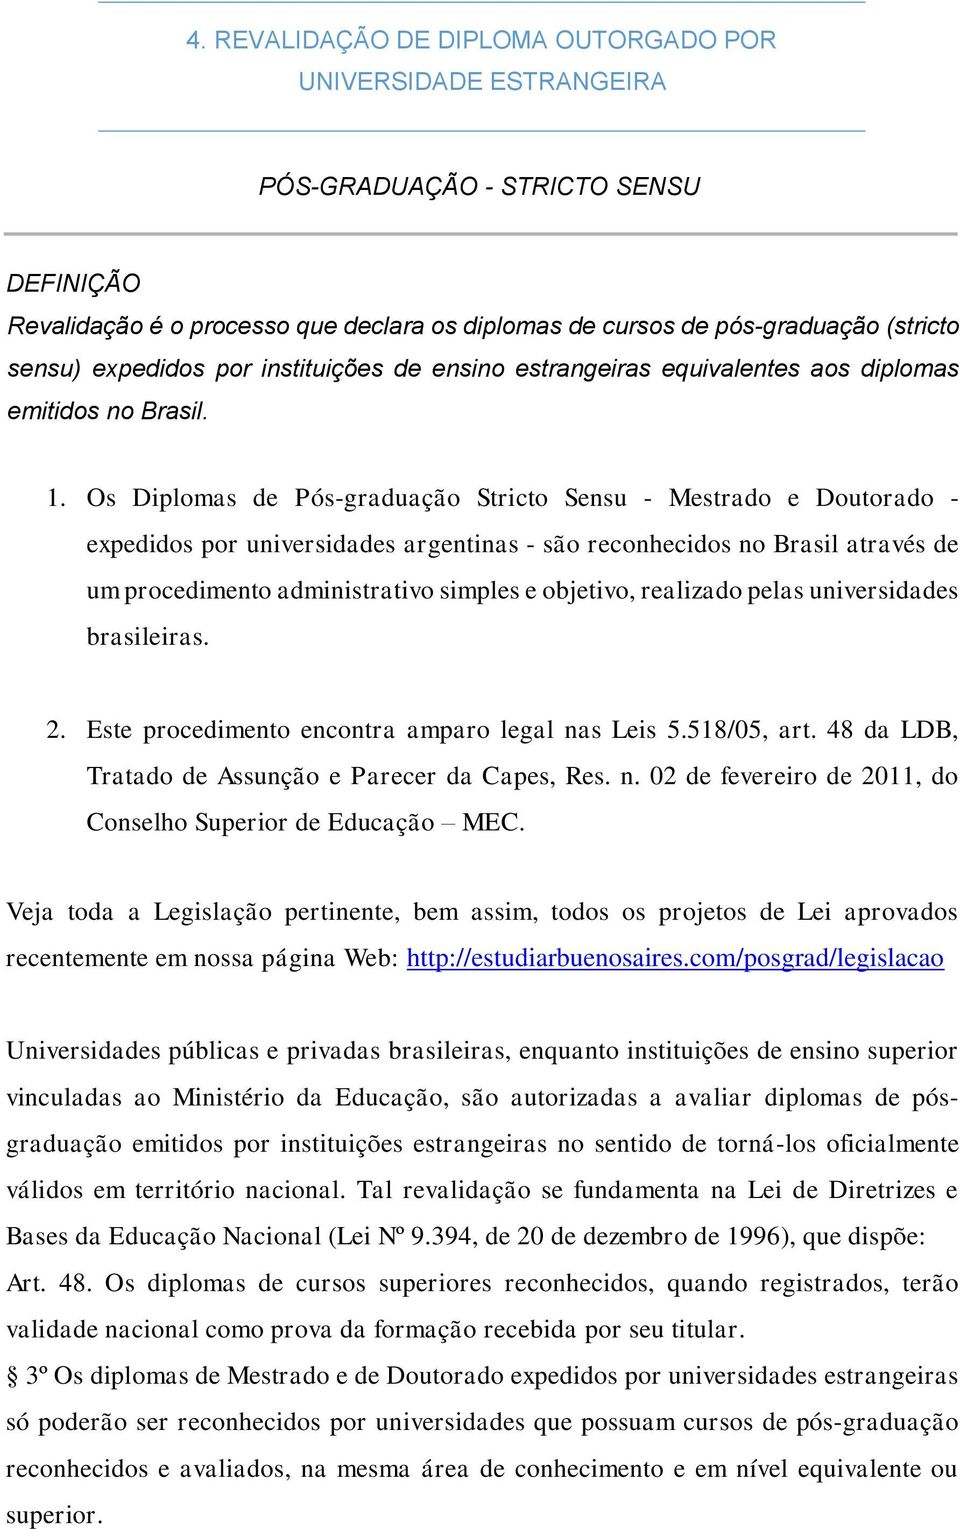 Os Diplomas de Pós-graduação Stricto Sensu - Mestrado e Doutorado - expedidos por universidades argentinas - são reconhecidos no Brasil através de um procedimento administrativo simples e objetivo,